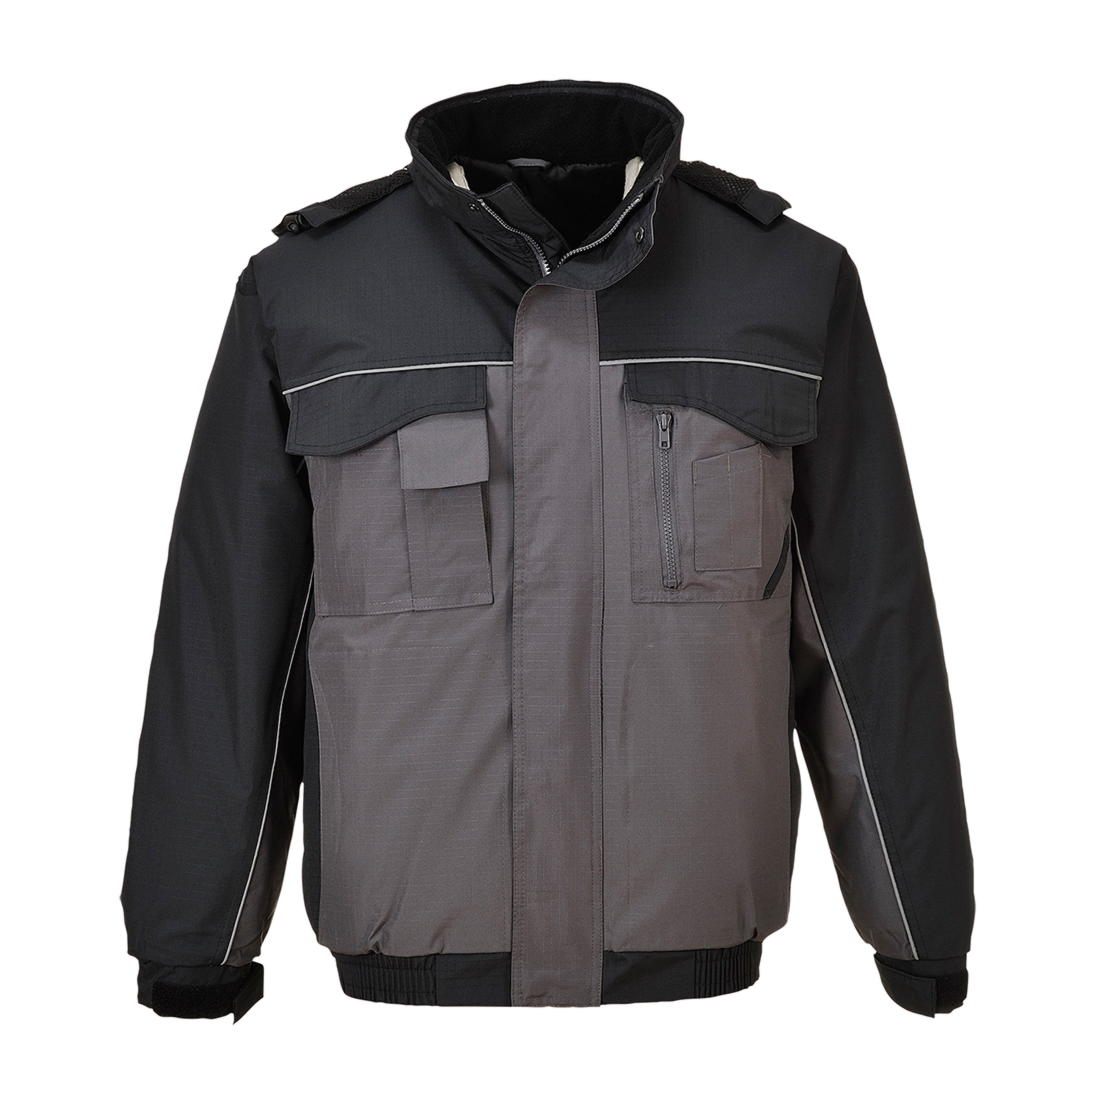 Куртка S561, цвет серый/черный